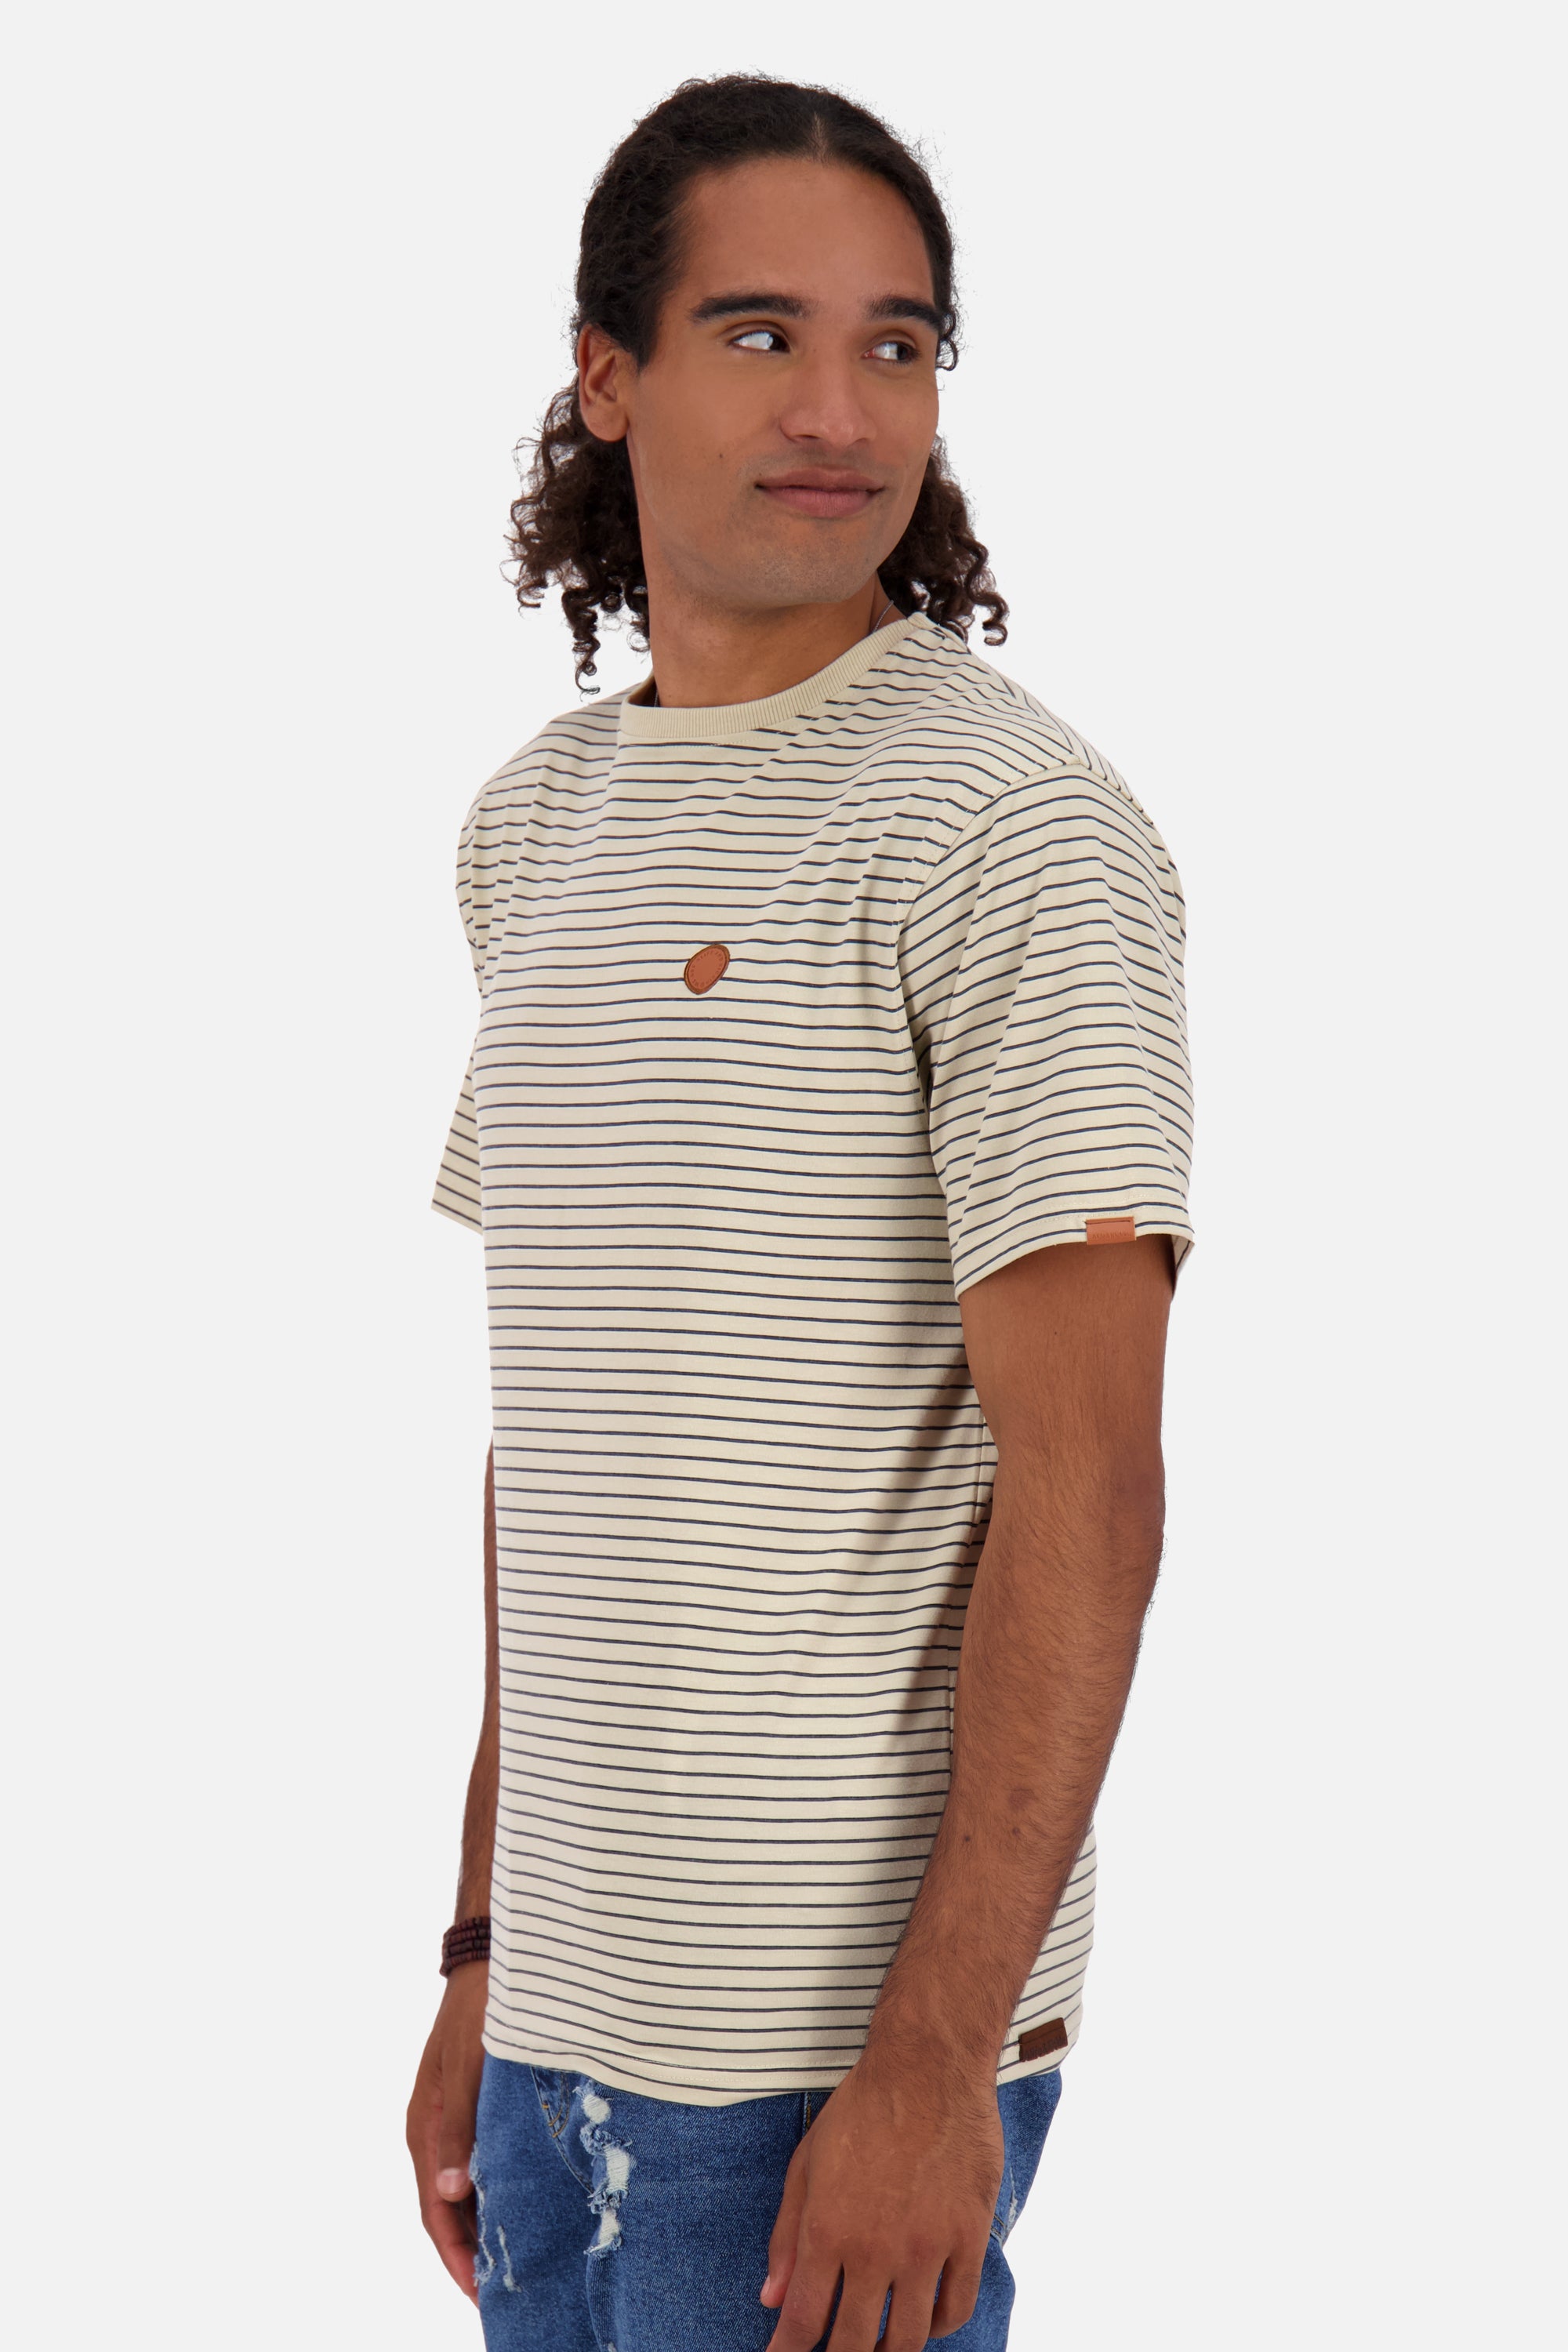 T-Shirt Herren NicAK Z mit Streifenmuster Beige